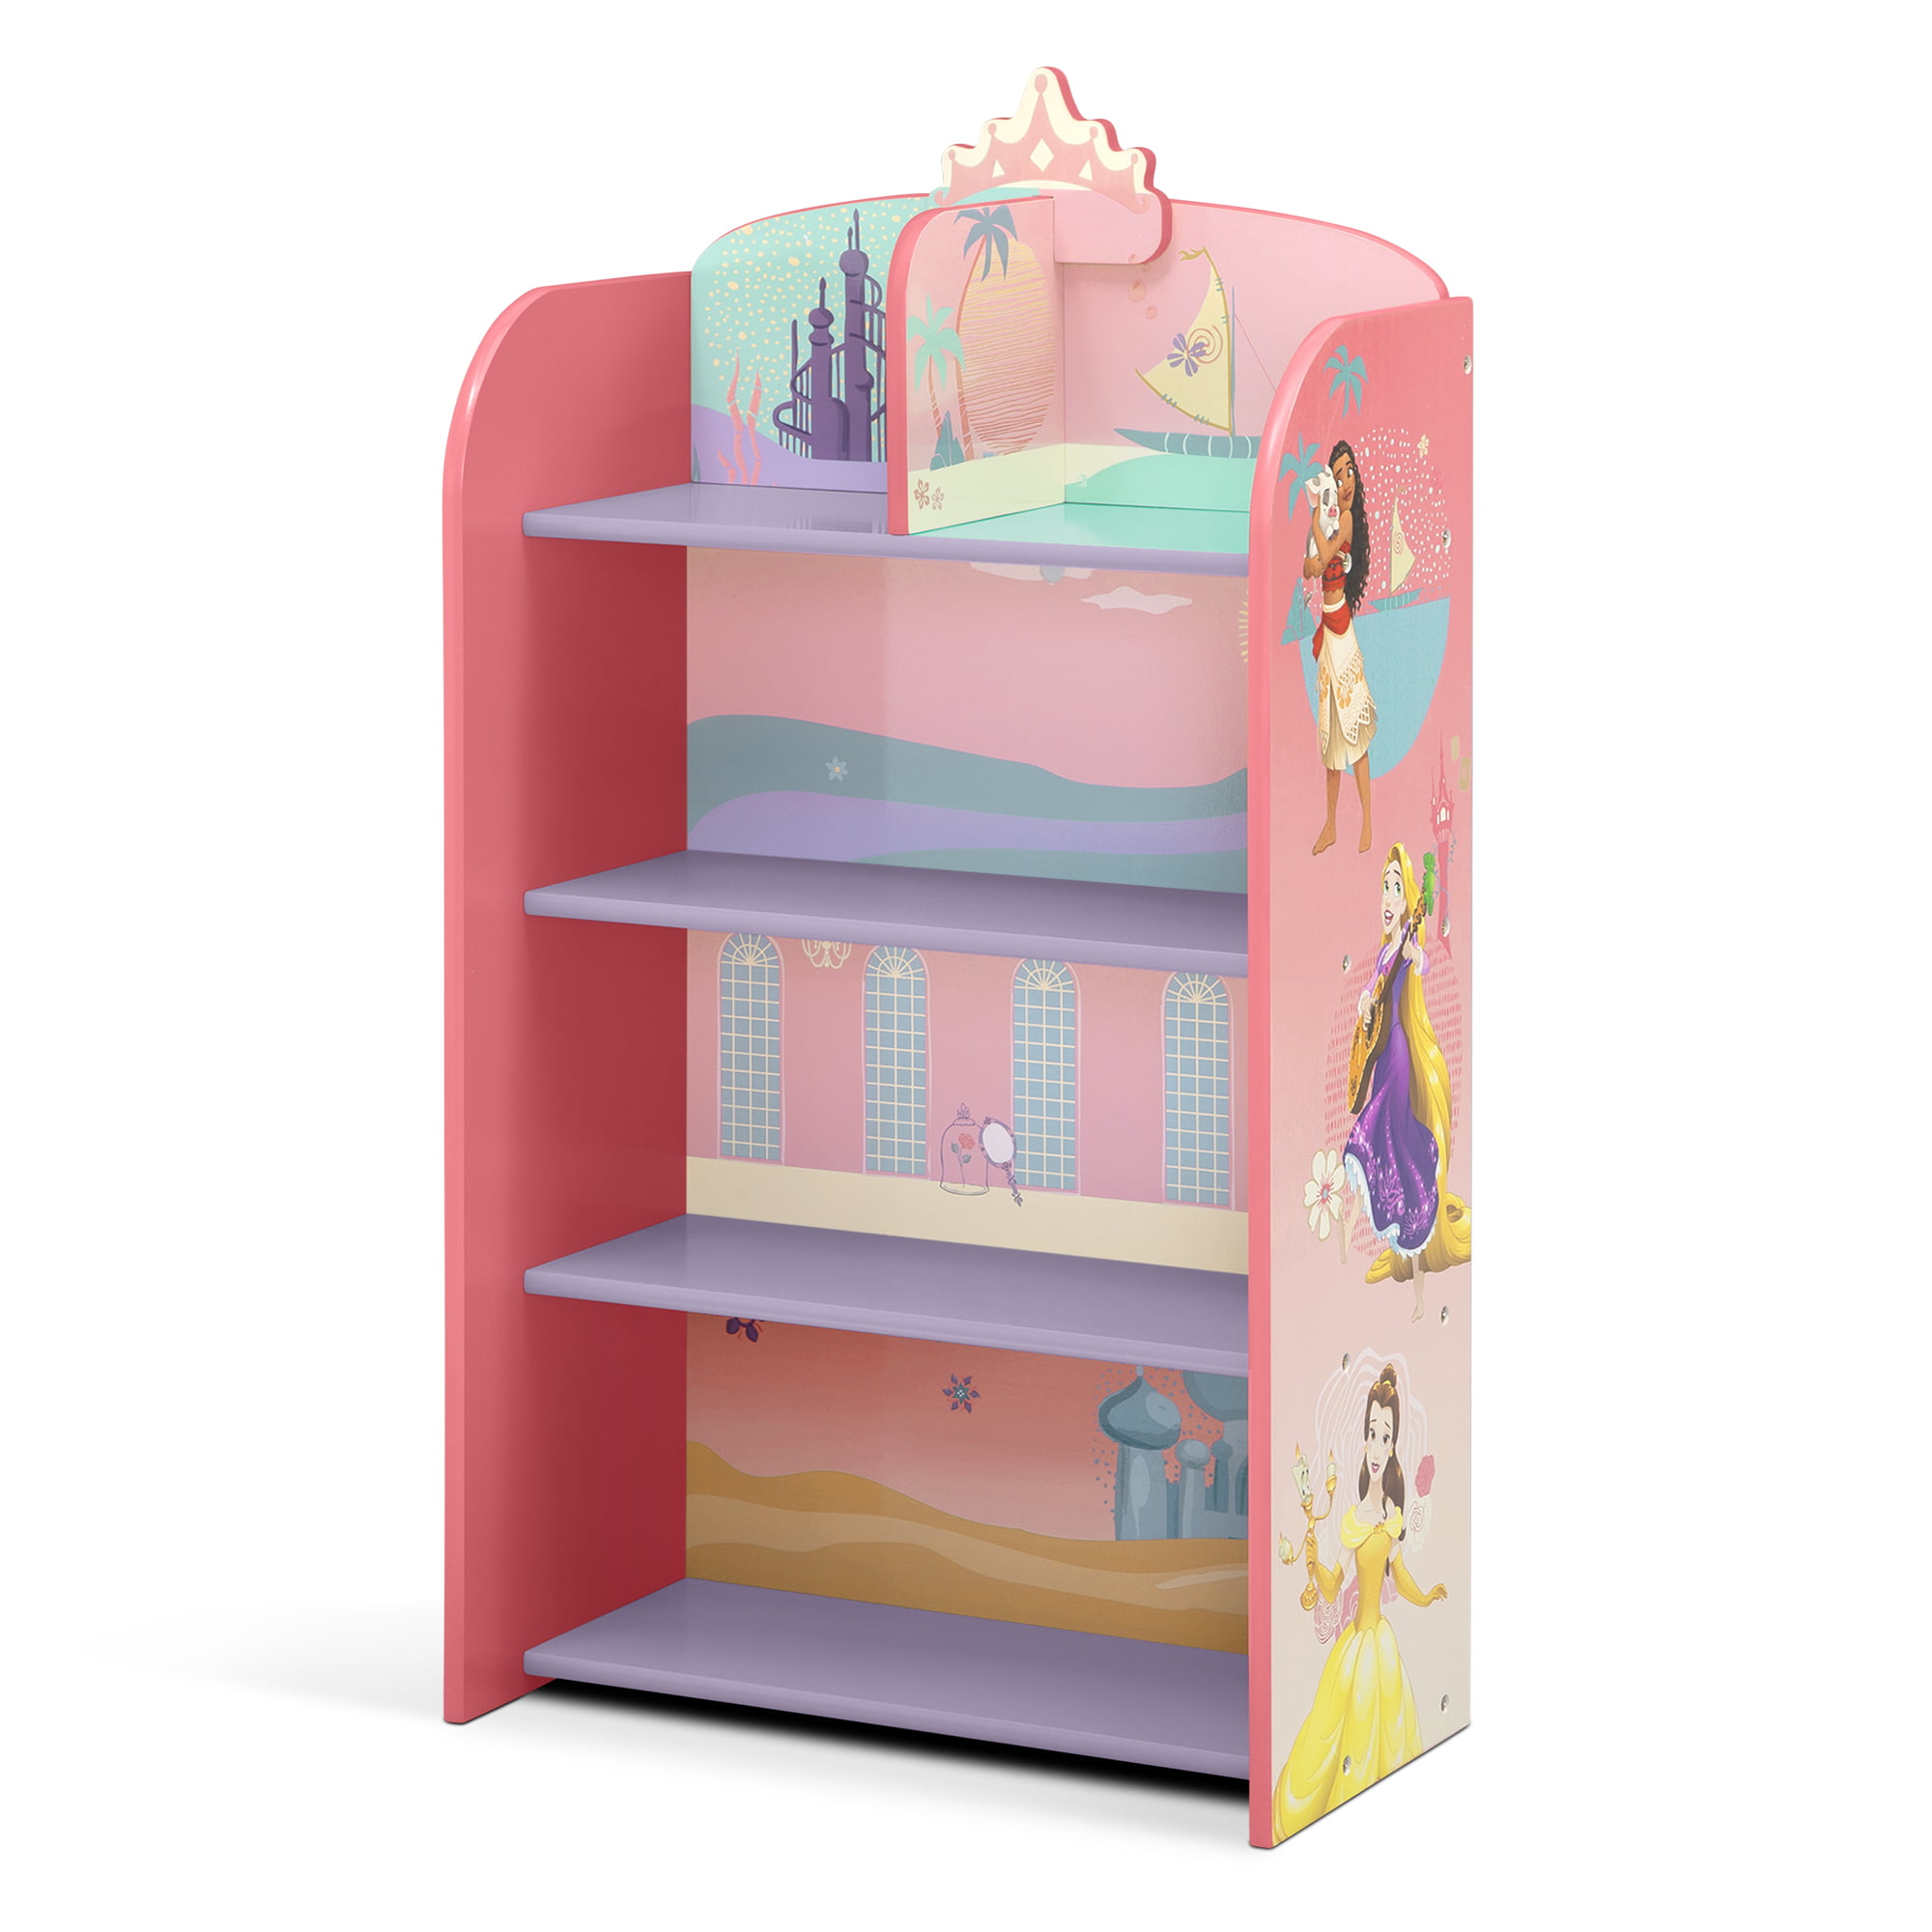 Disney Princess Playhouse 4-Shelf Delta Children - Greenguard Gold Certified, Pink Walmart.com